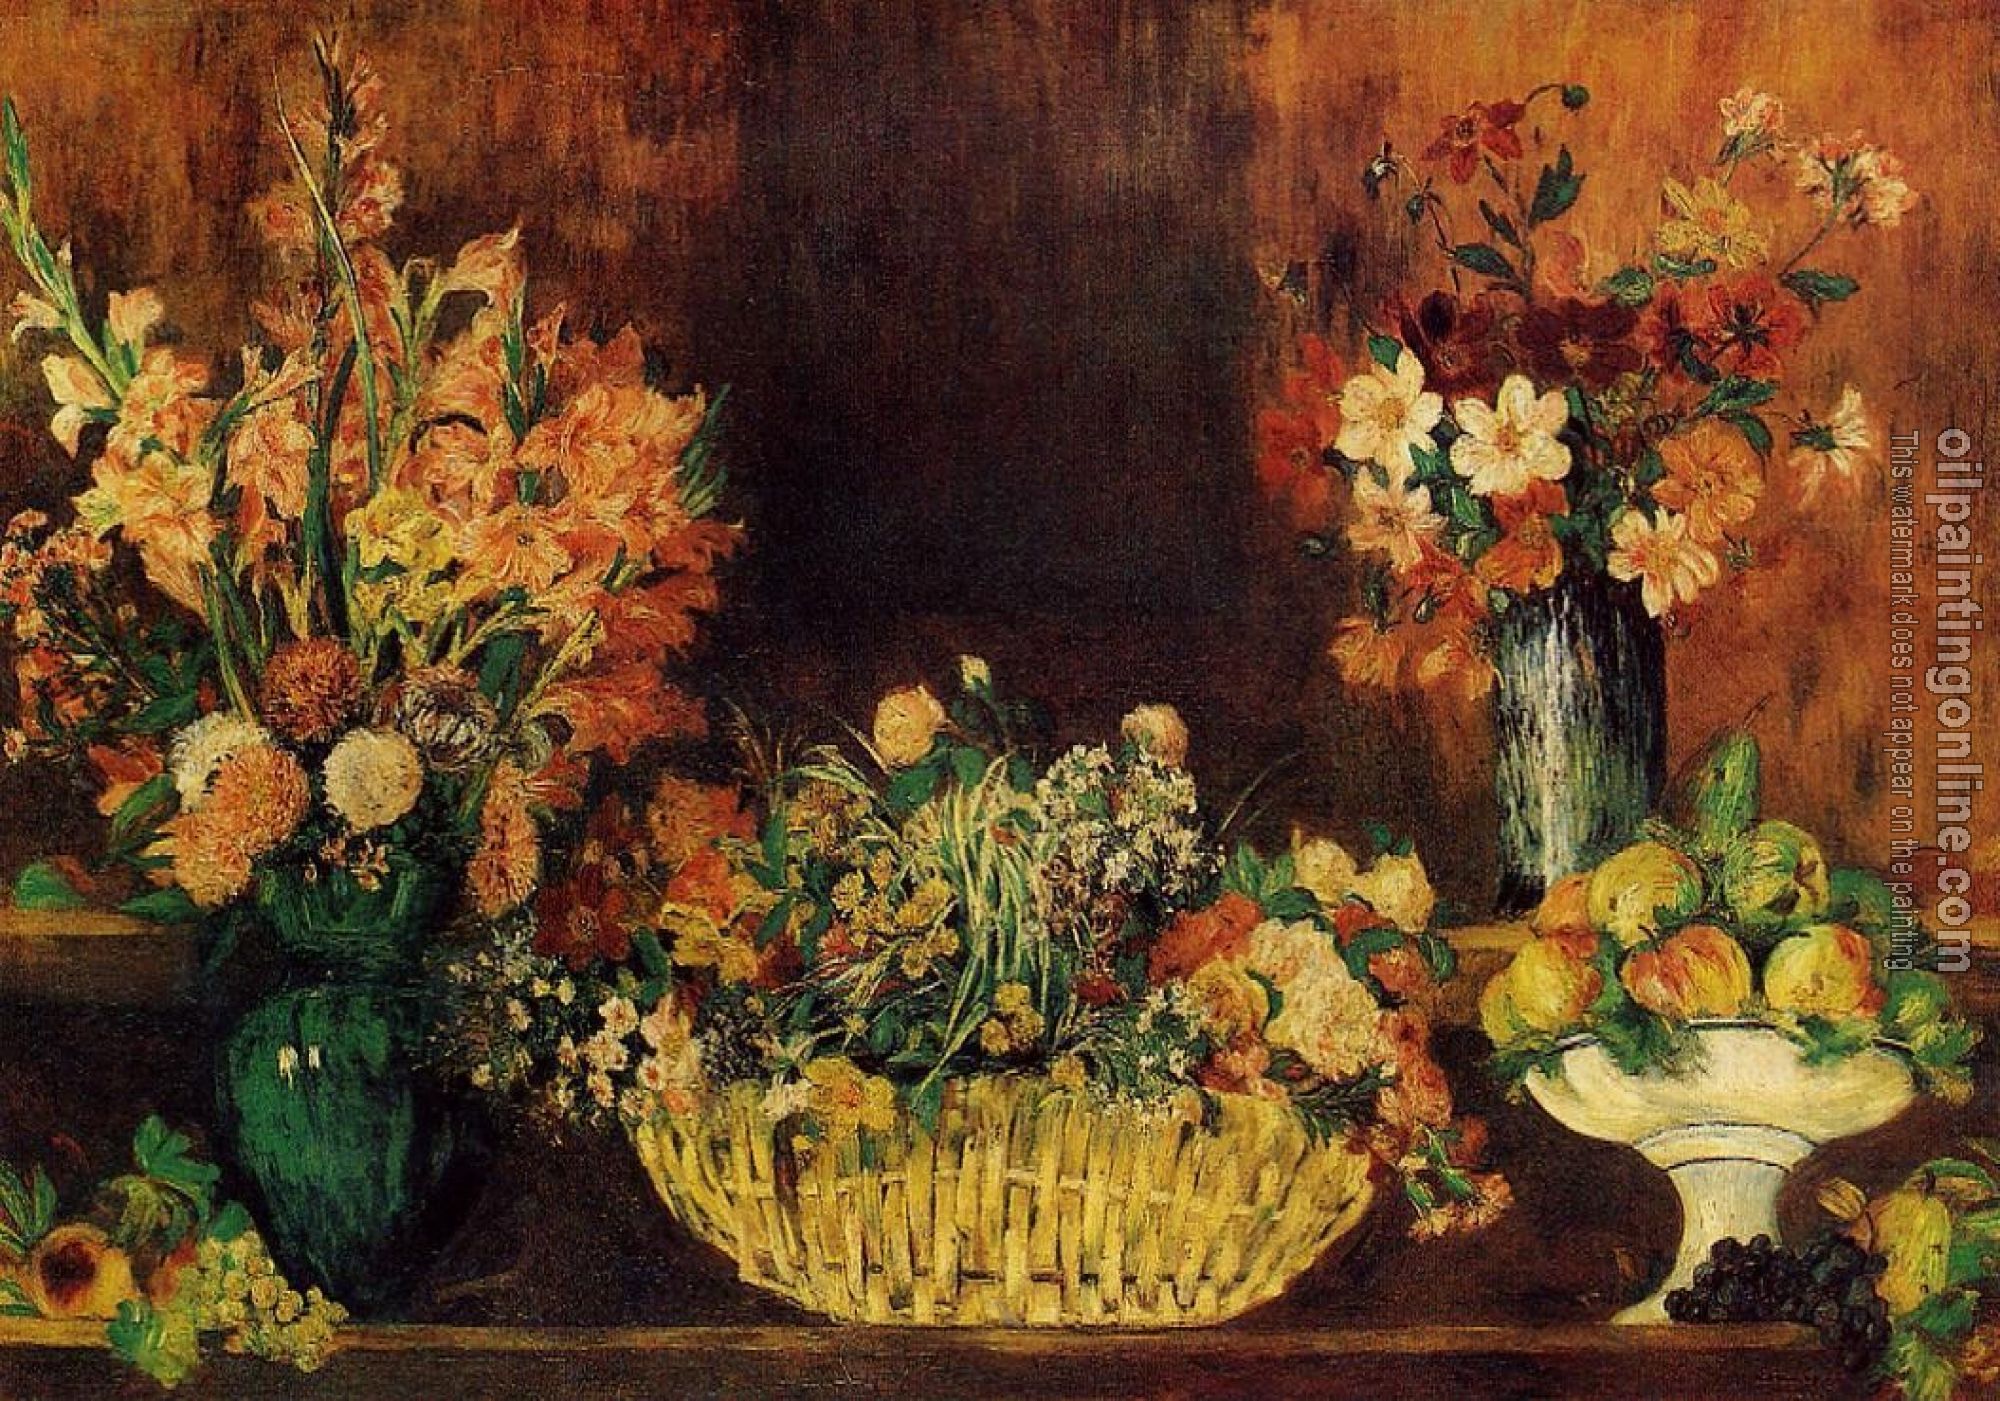 Renoir, Pierre Auguste - Vase, Basket of Flowers and Fruit